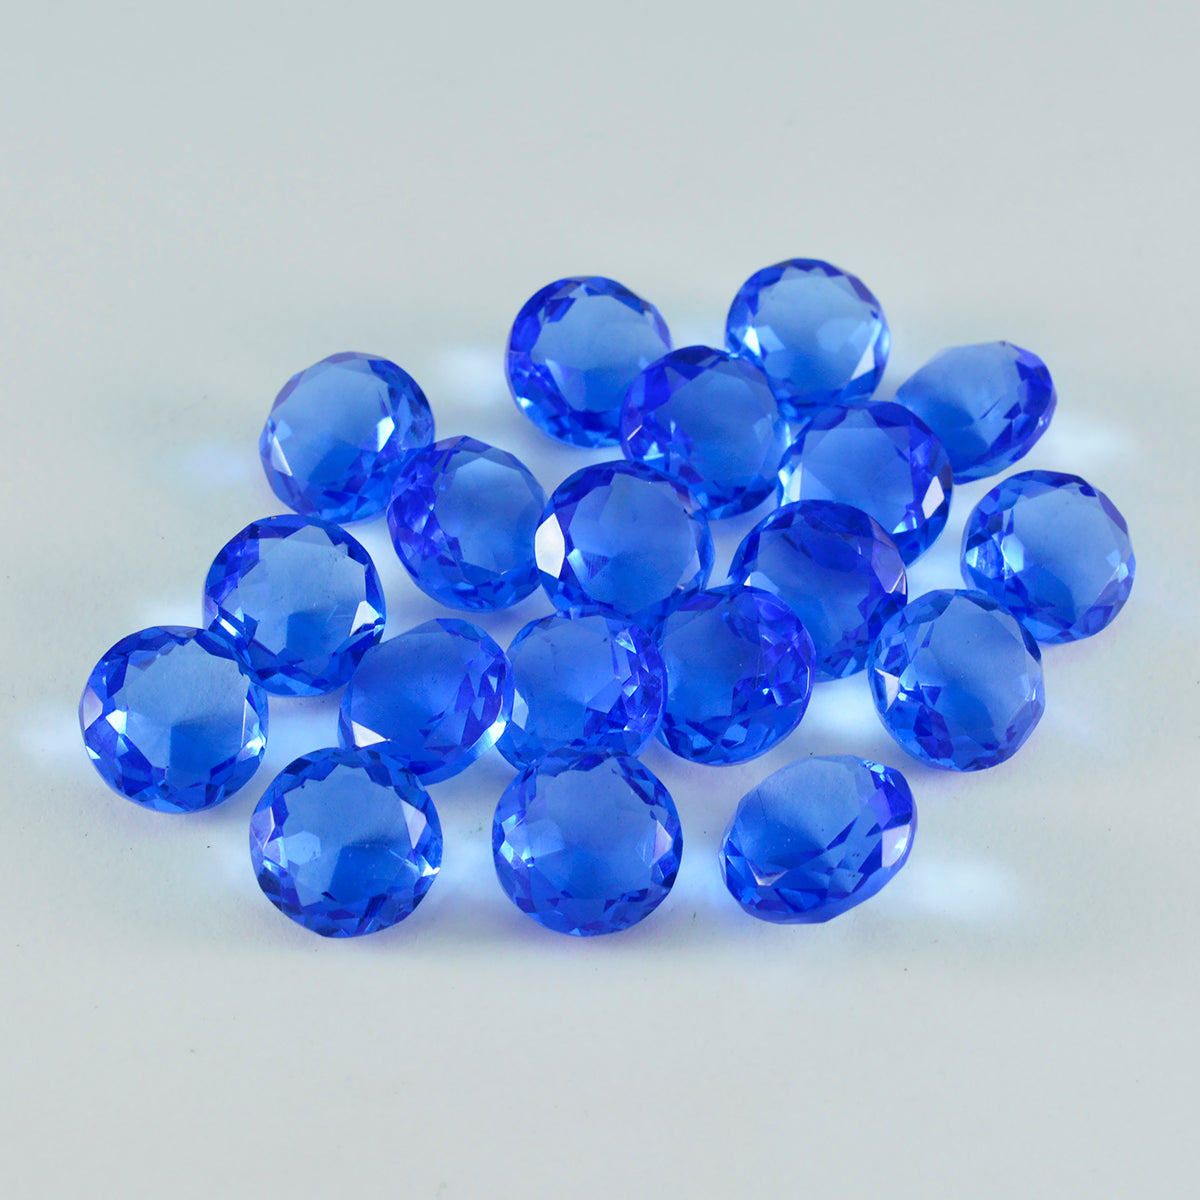 riyogems 1 шт. синий сапфир cz ограненный 6x6 мм драгоценный камень круглой формы, качественный драгоценный камень